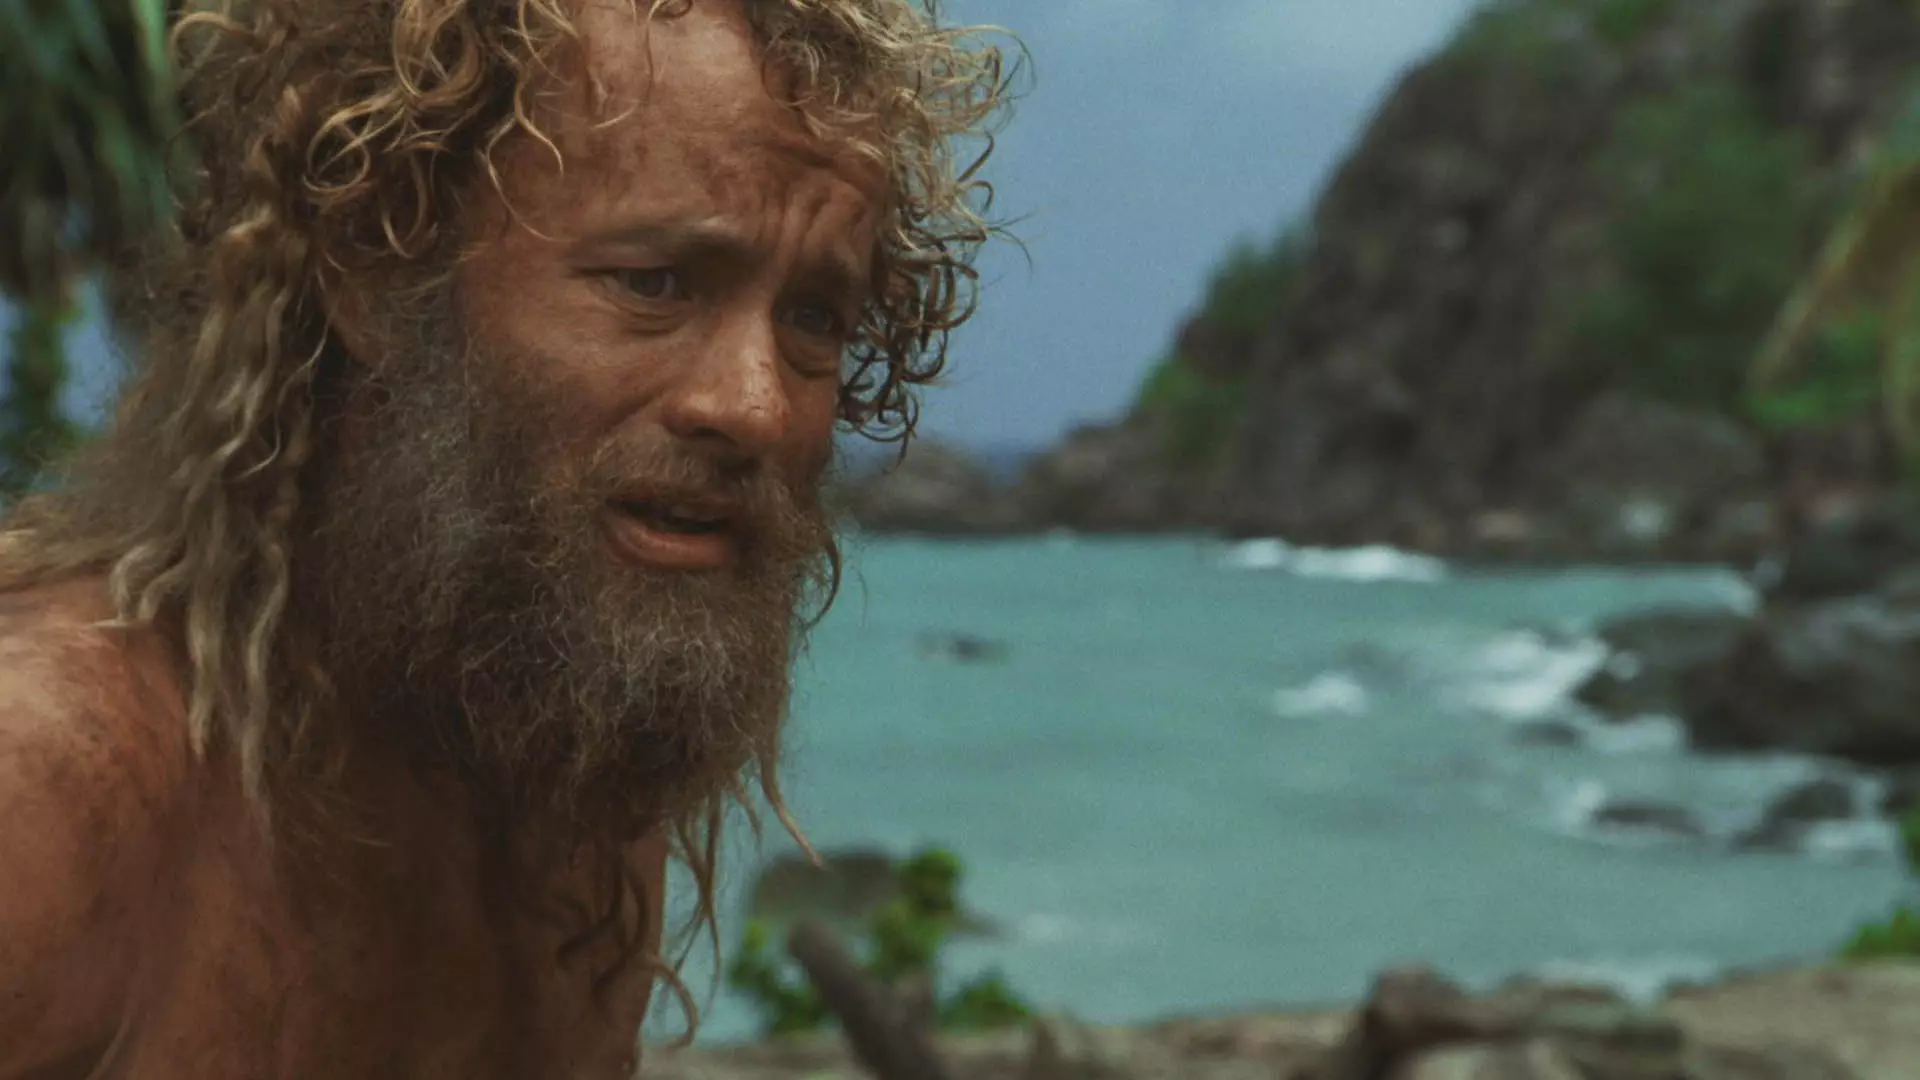 تام هنکس در یک جزیره دور افتاده در فیلم Cast Away